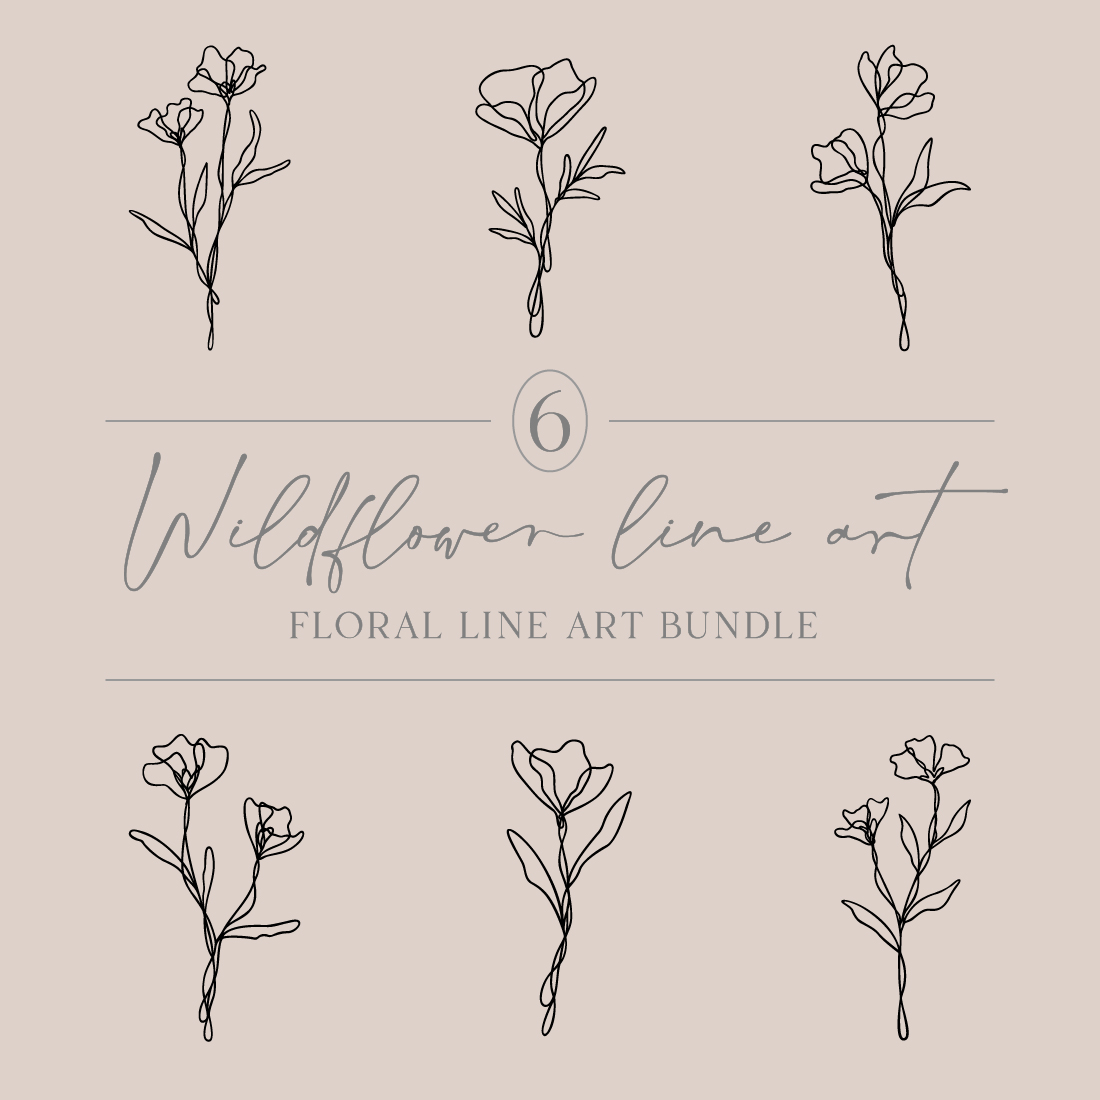 Flower Line Art Bundle | 6 Elegant Wildflowers | Botanical Nature Vector Illustration Set cover image.